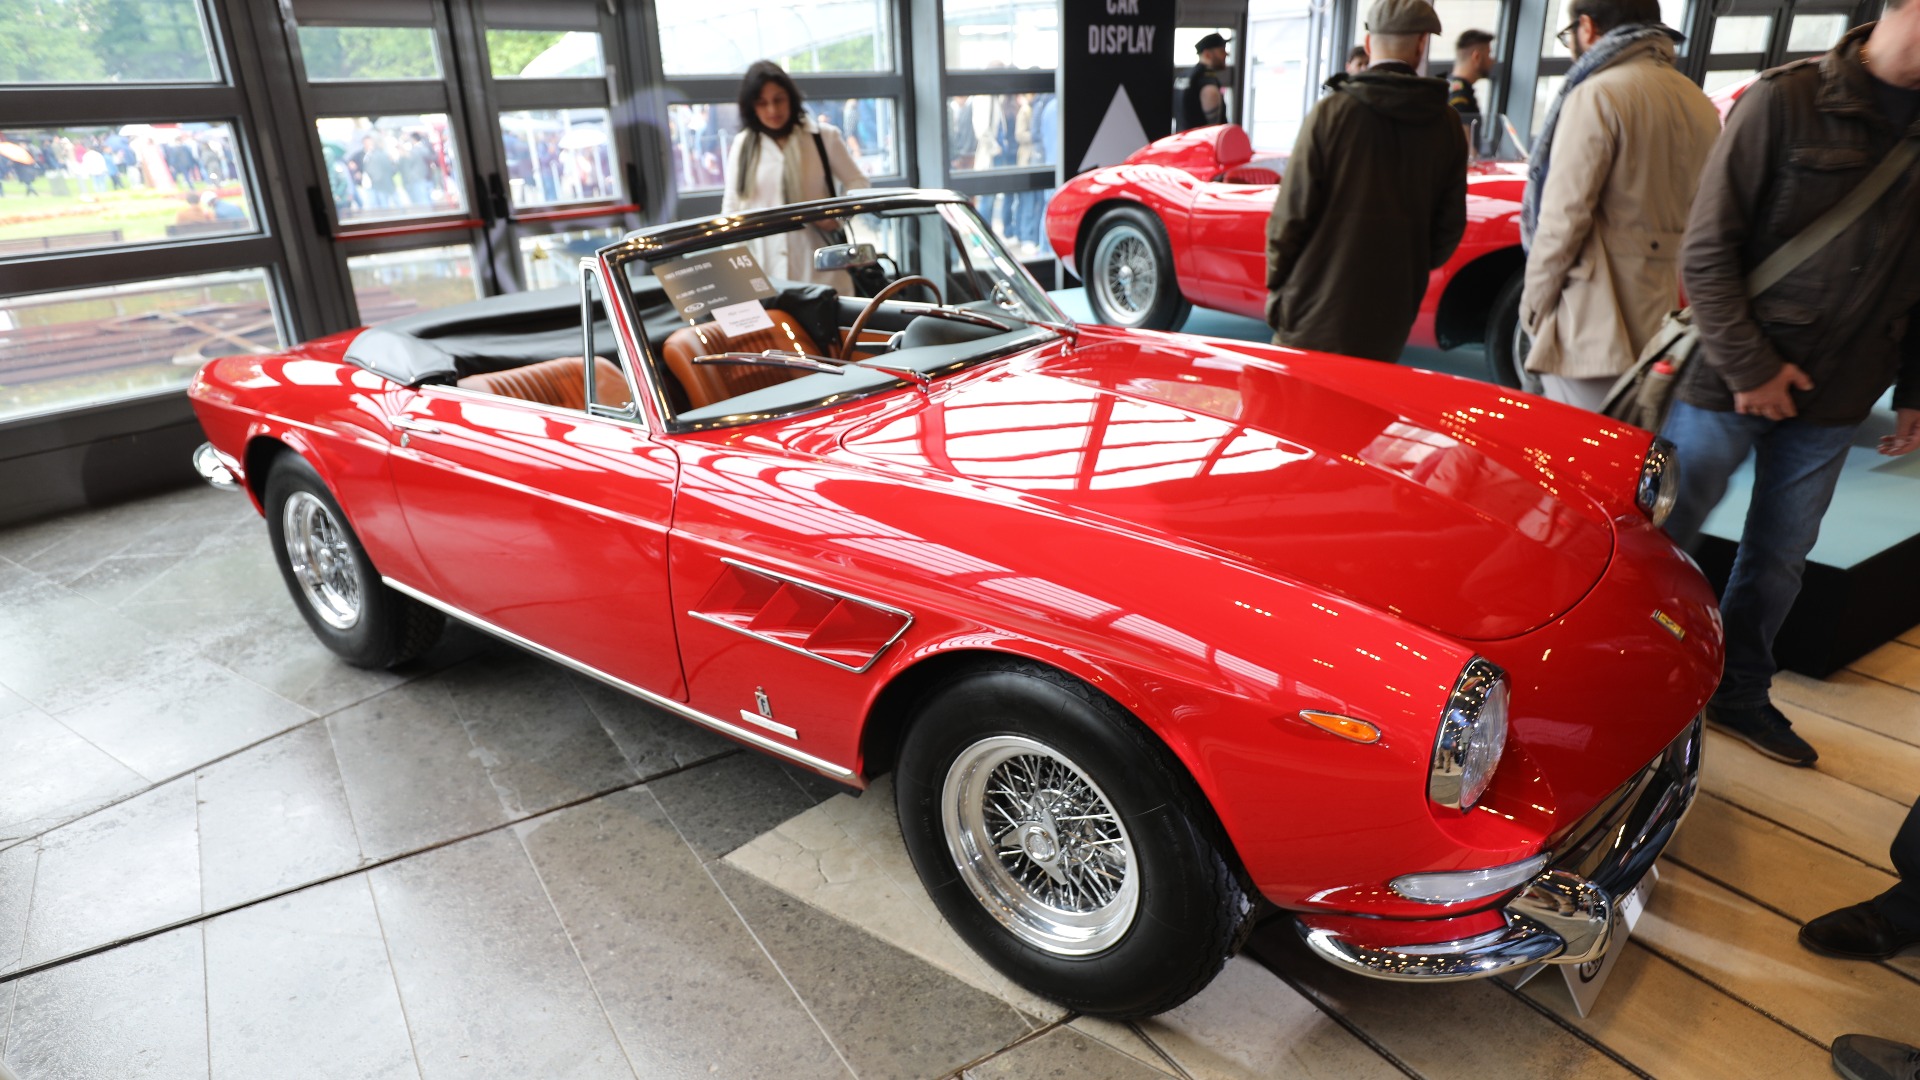 1965 Ferrari 275 GTS - 16 187 038 kr